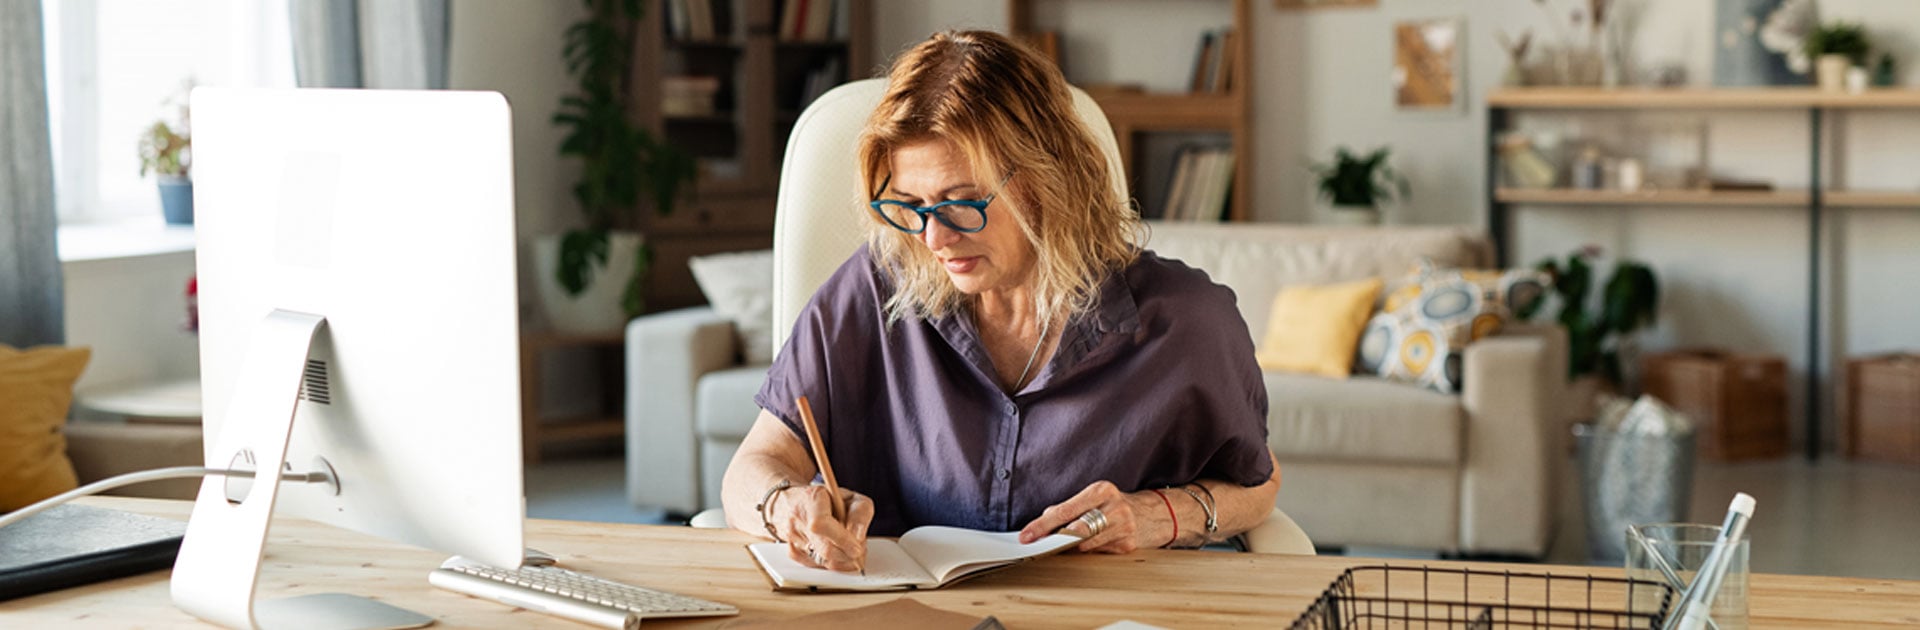 Eine Frau mit dunkelblondem Haar, und einer dunkelgrüner, dicker Brille schreibt am Schreibtisch in ein Buch. Sie sitzt in einem Raum, der sehr wohnlich eingerichtet ist.